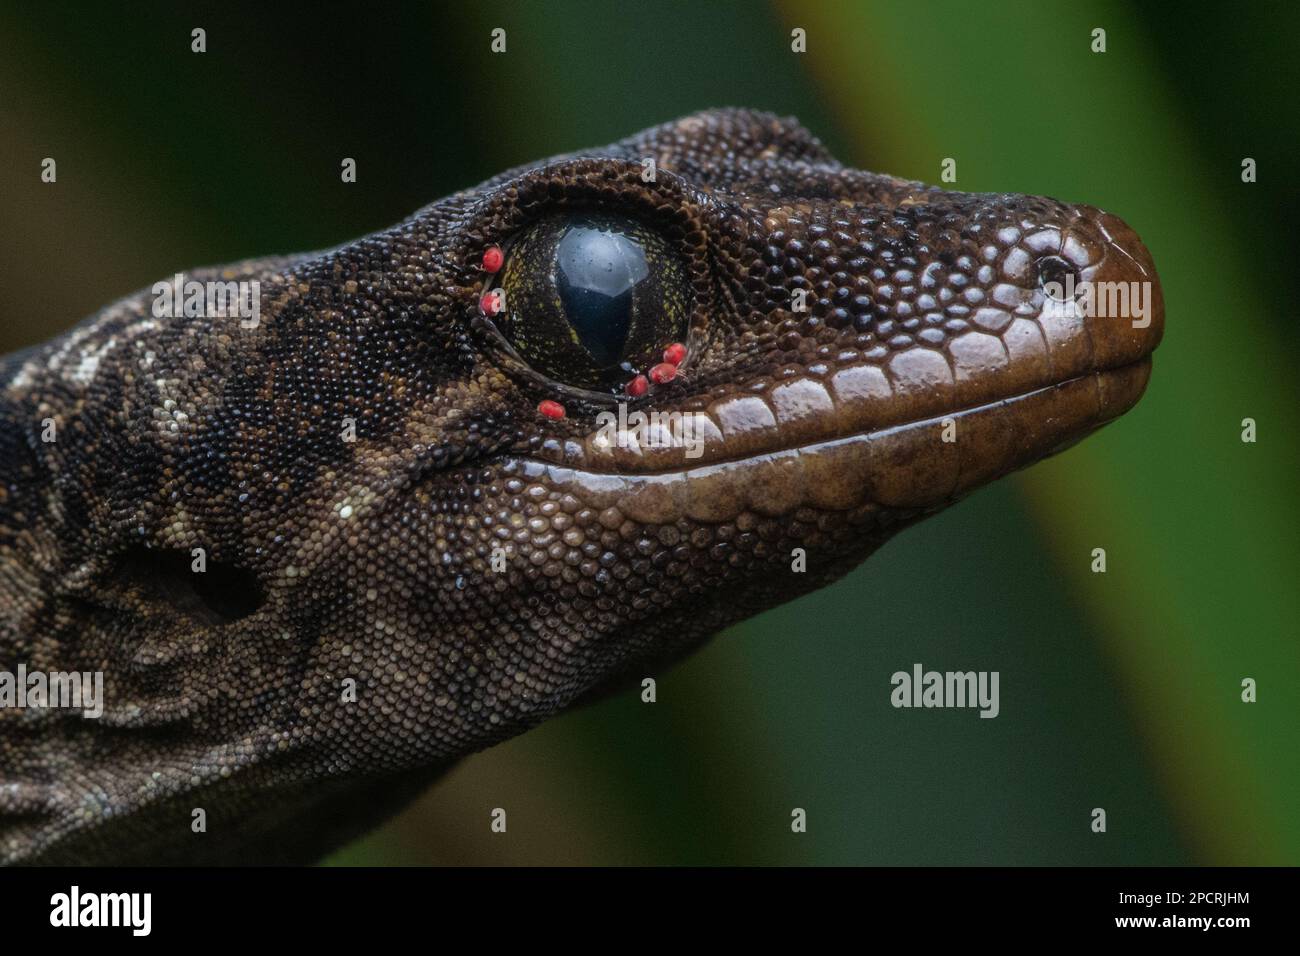 Ein Makroporträt eines wilden Duvaucels-Gecko, Hoplodactylus duvaucelii, und der parasitären Reptilienspezialistin Geckobia naultina um sein Auge. Stockfoto